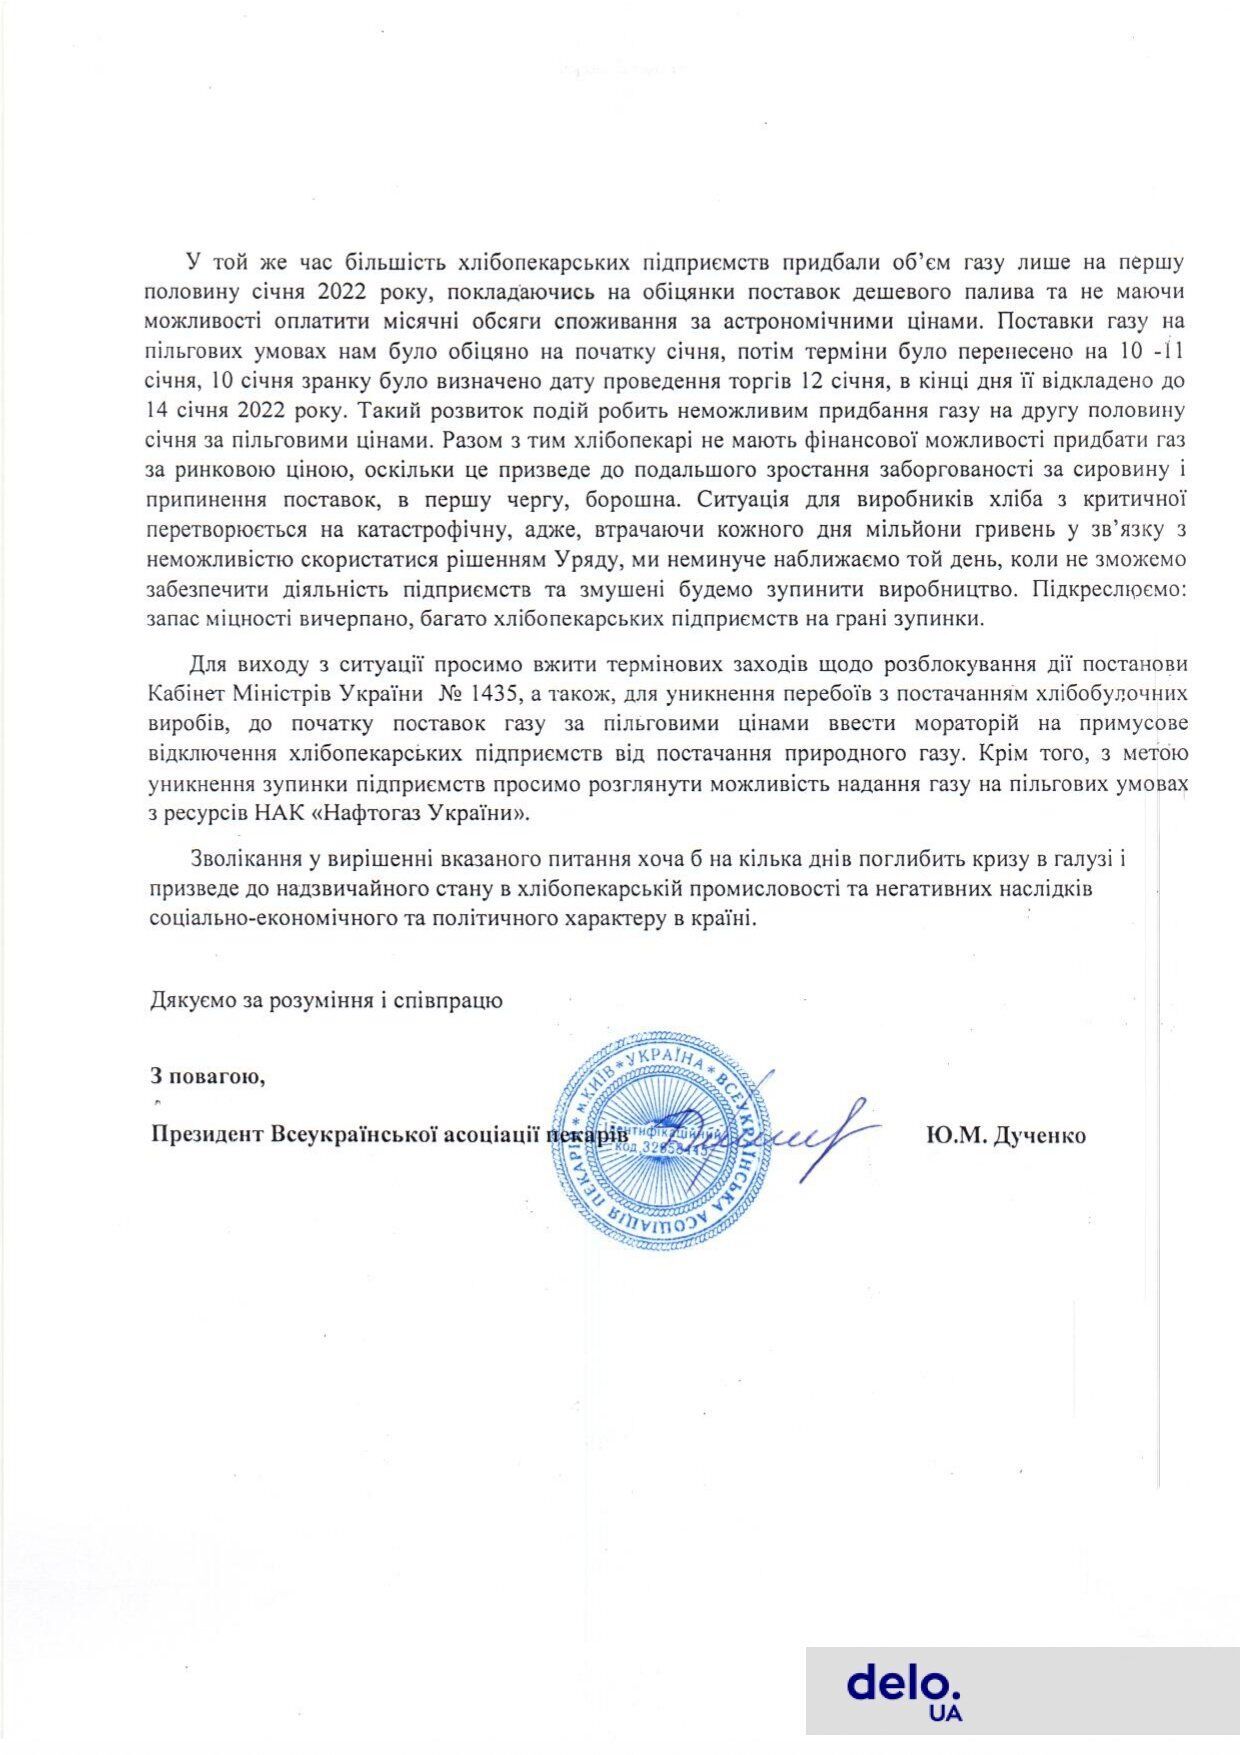 Официальное обращение Всеукраинской ассоциации пекарей к украинским властям